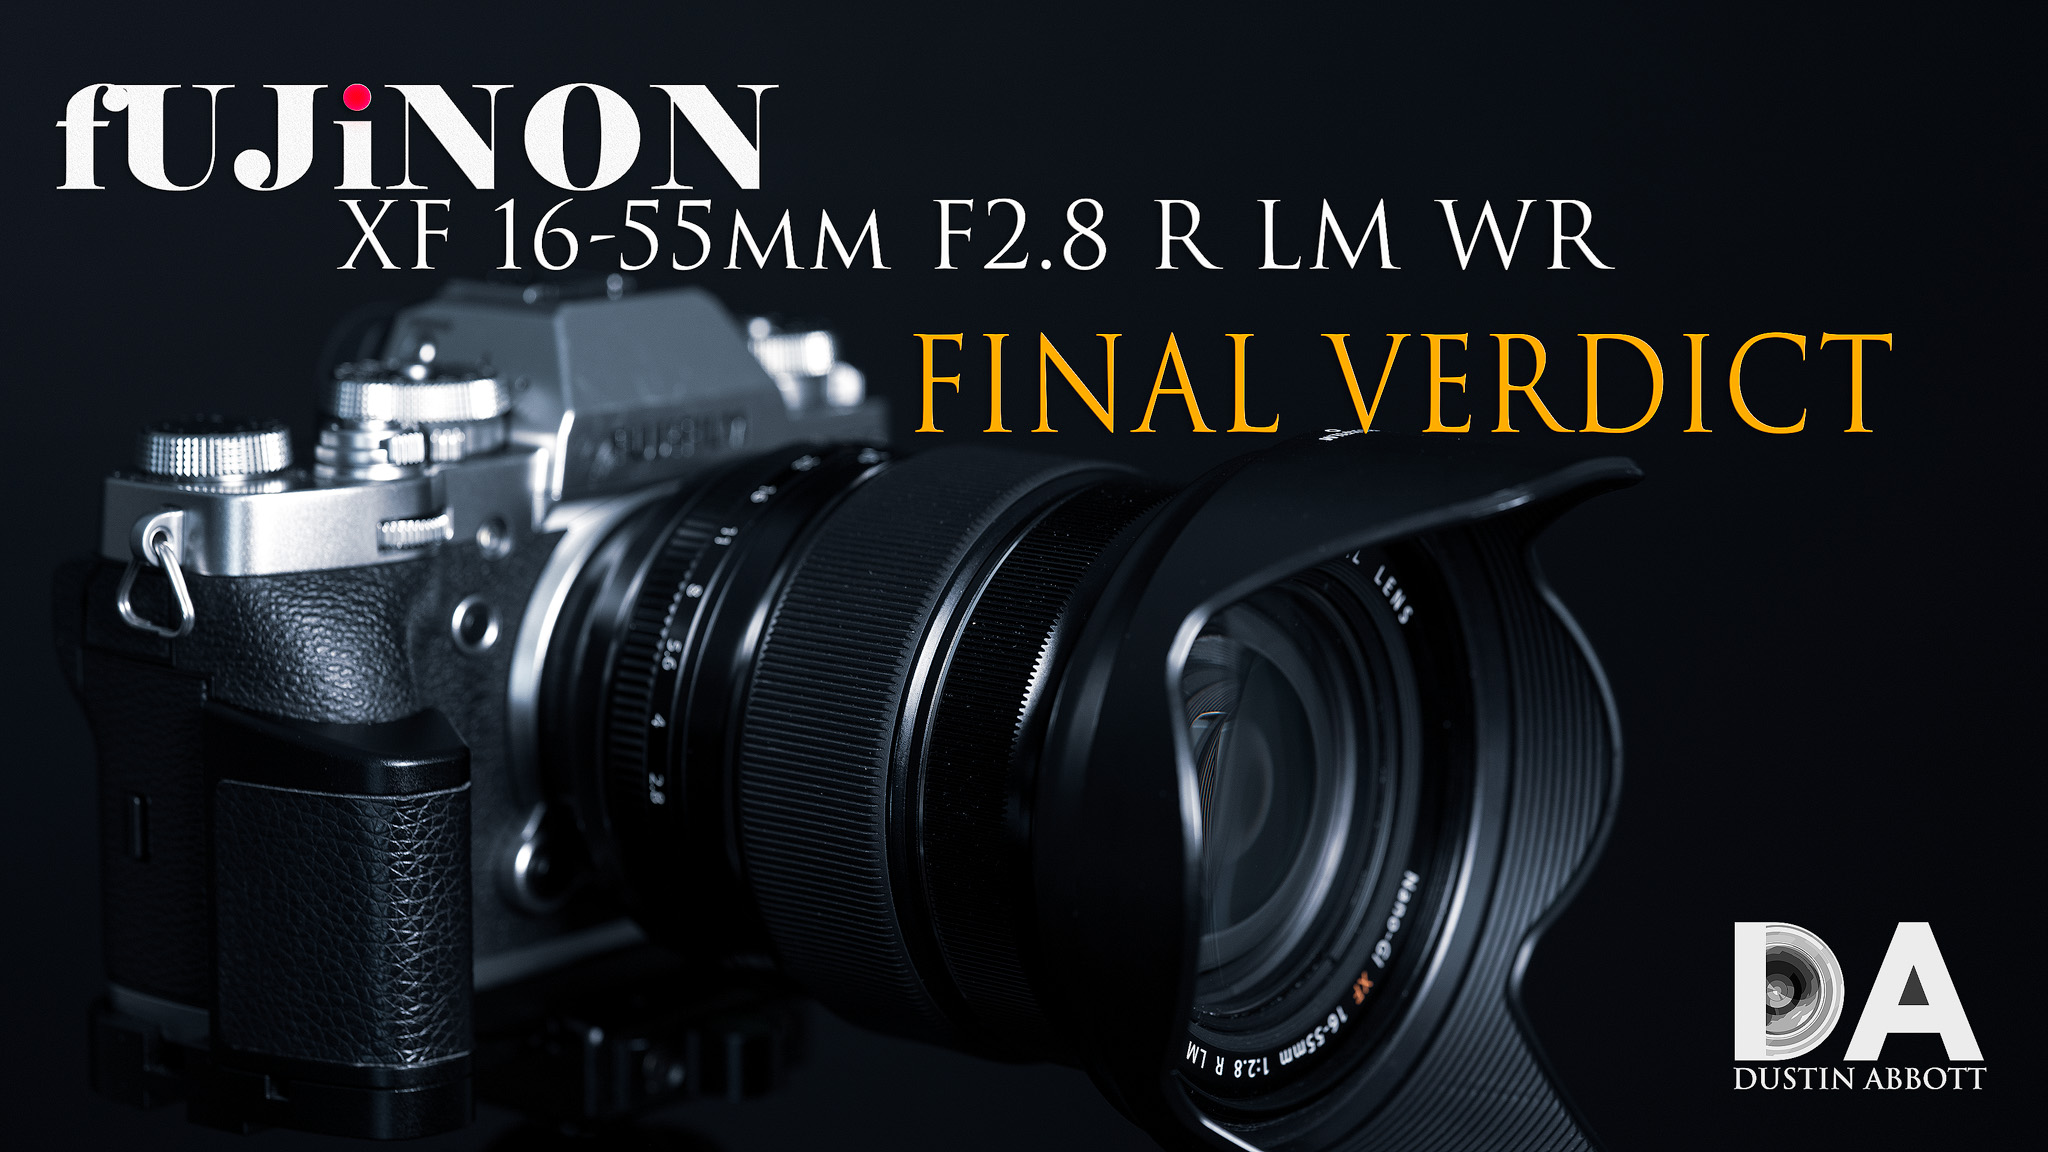 Fujinon XF16-55mmF2.8 R LM WR